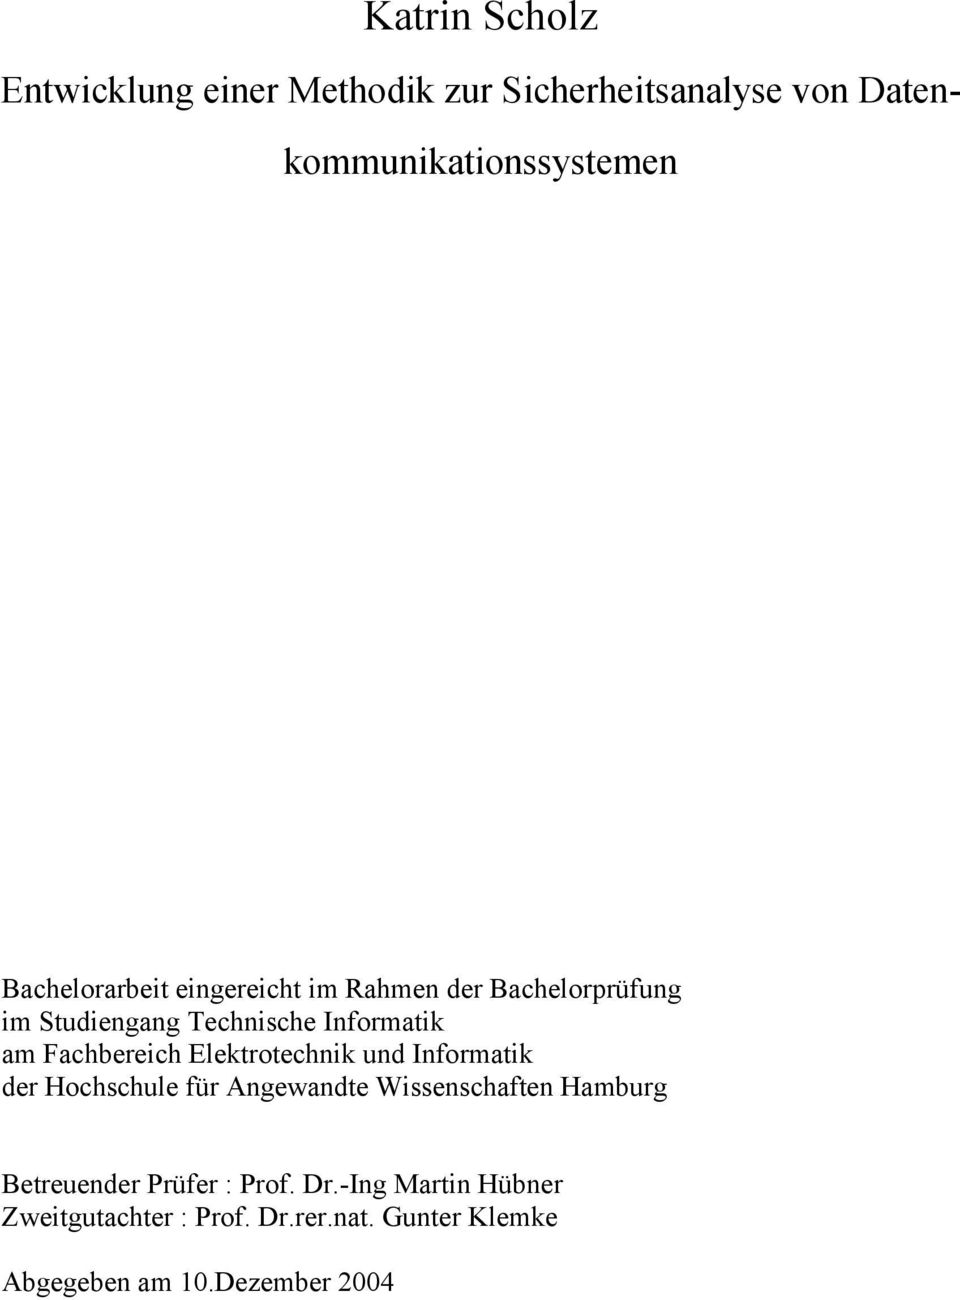 Fachbereich Elektrotechnik und Informatik der Hochschule für Angewandte Wissenschaften Hamburg